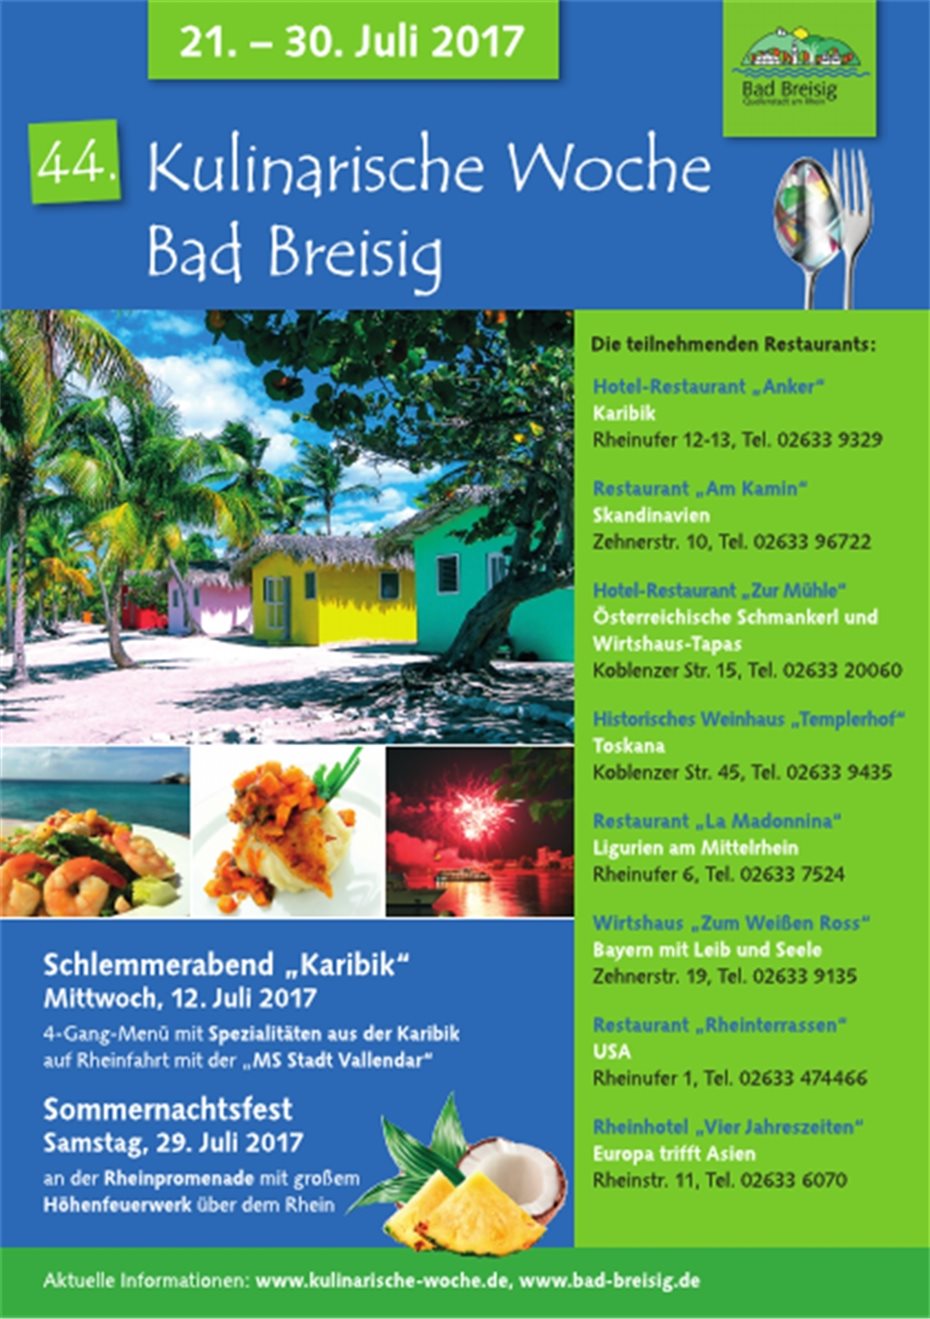 Kulinarischer Genuss auf dem Rhein –
Auftakt der Kulinarischen Woche am 12. Juli